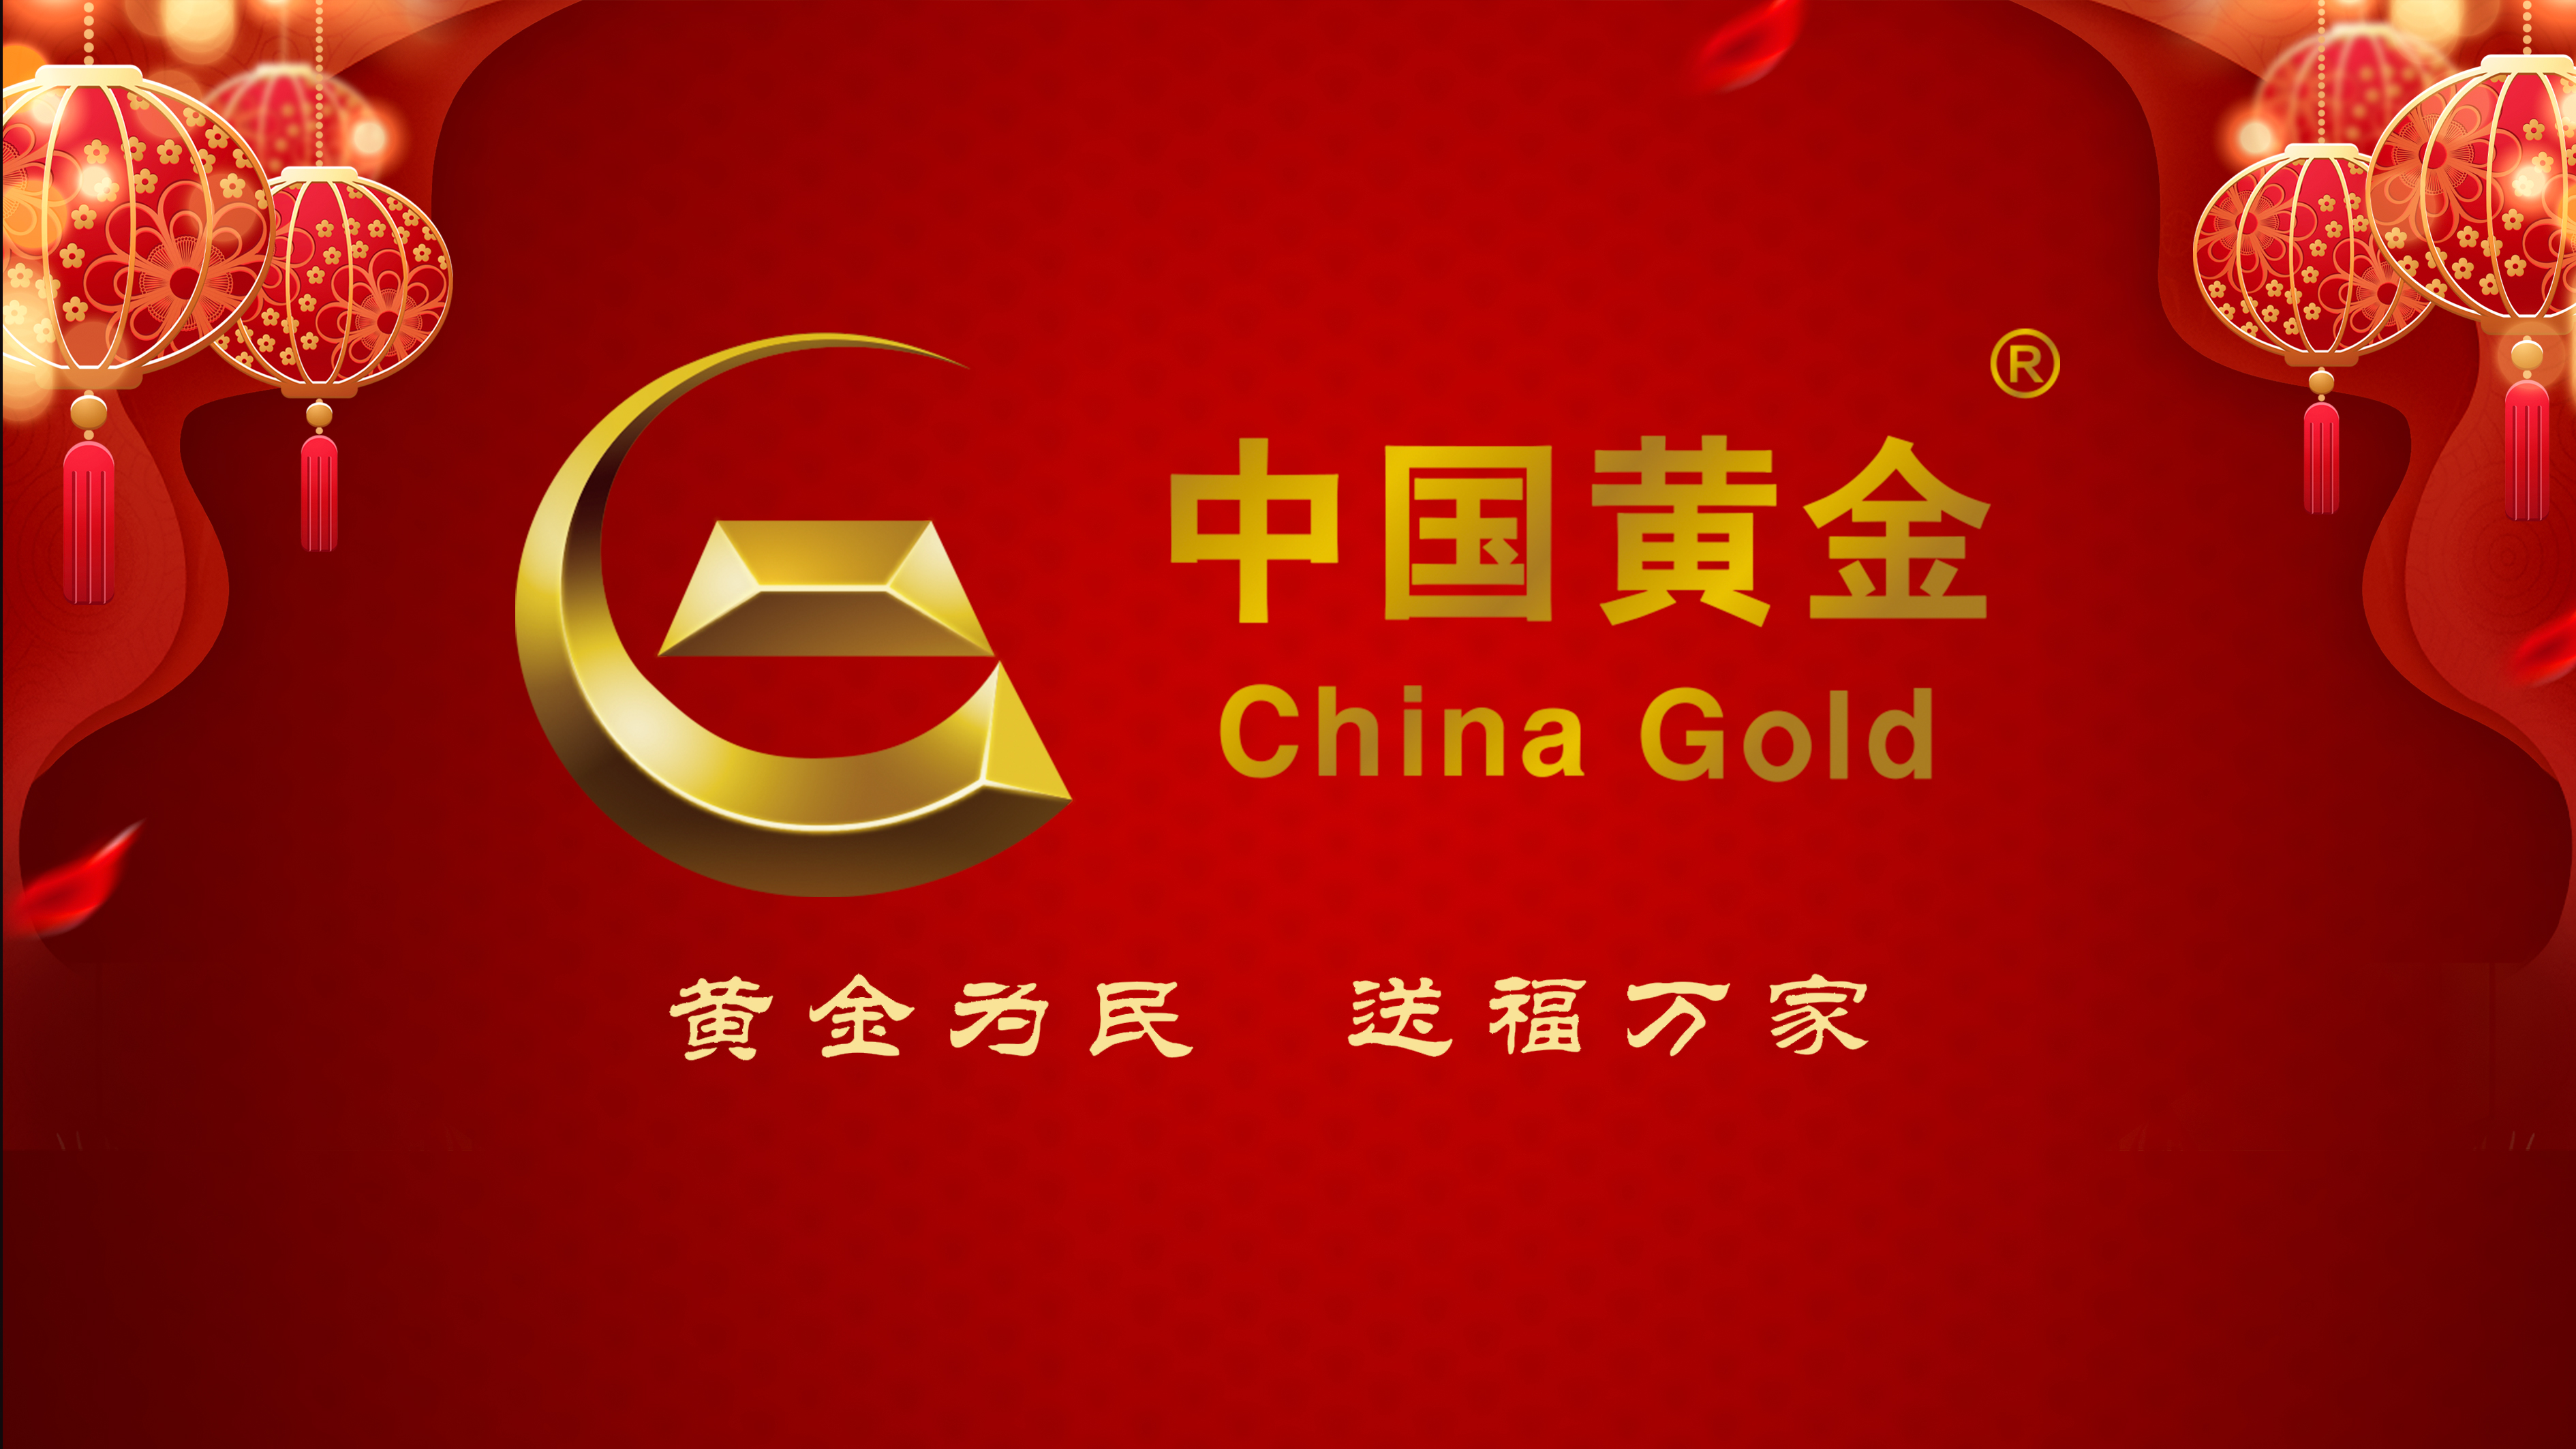 中国黄金logo图片高清图片